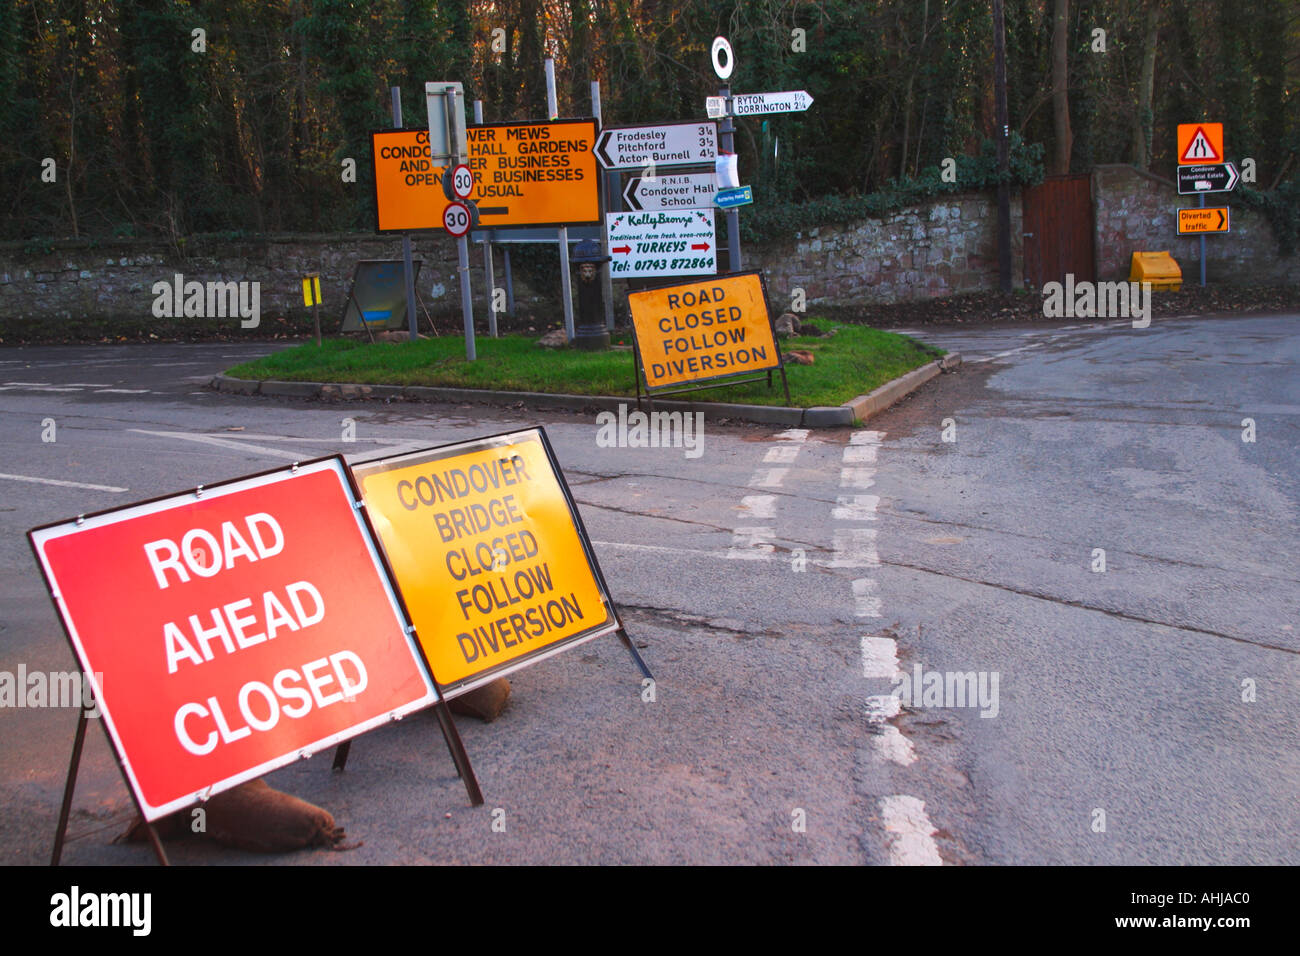 Plusieurs panneaux routiers Condover près de Shrewbury Shropshire England UK Royaume-Uni GB Banque D'Images